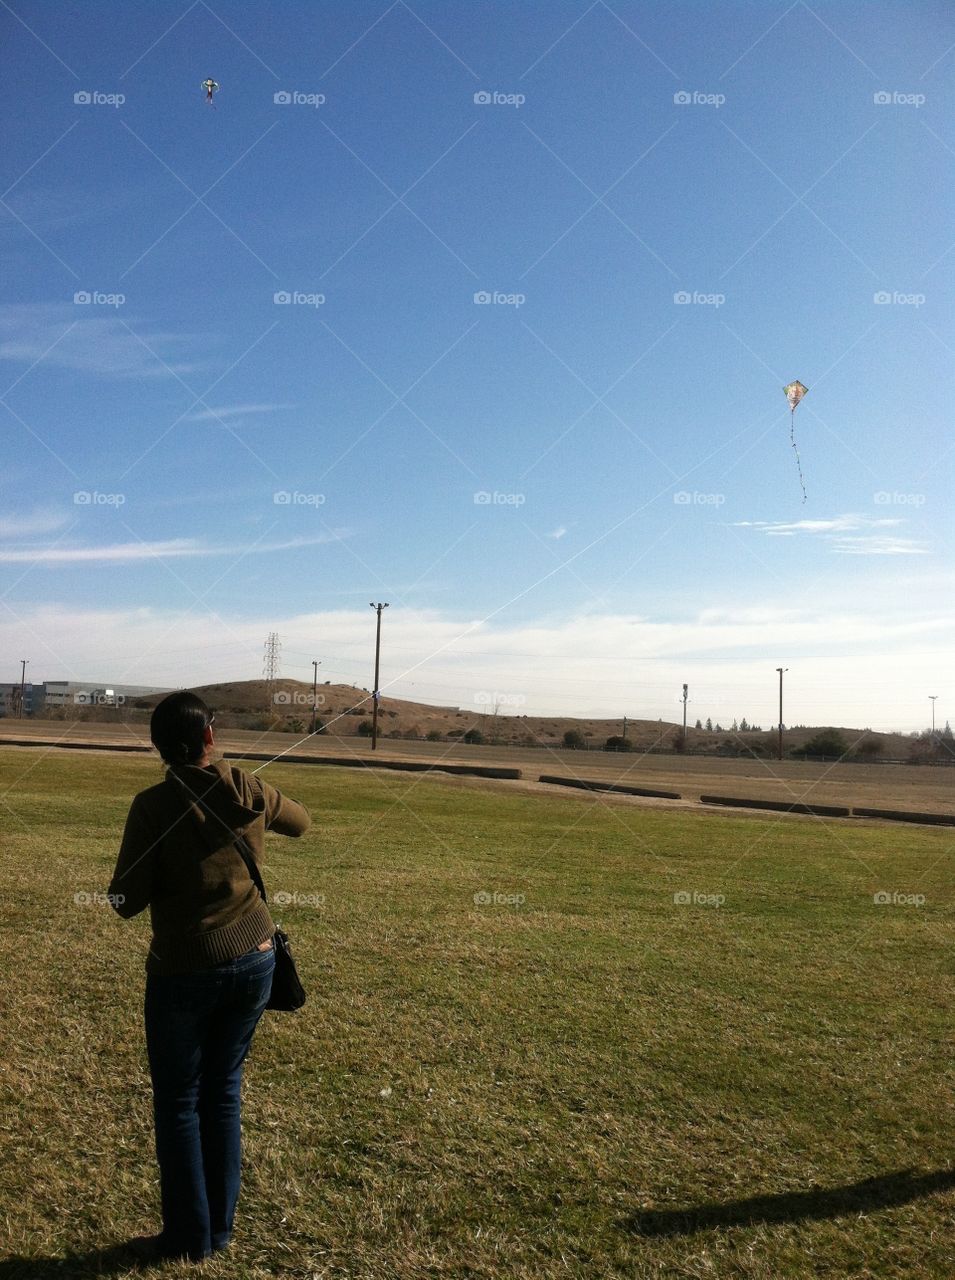 Lady flying kite